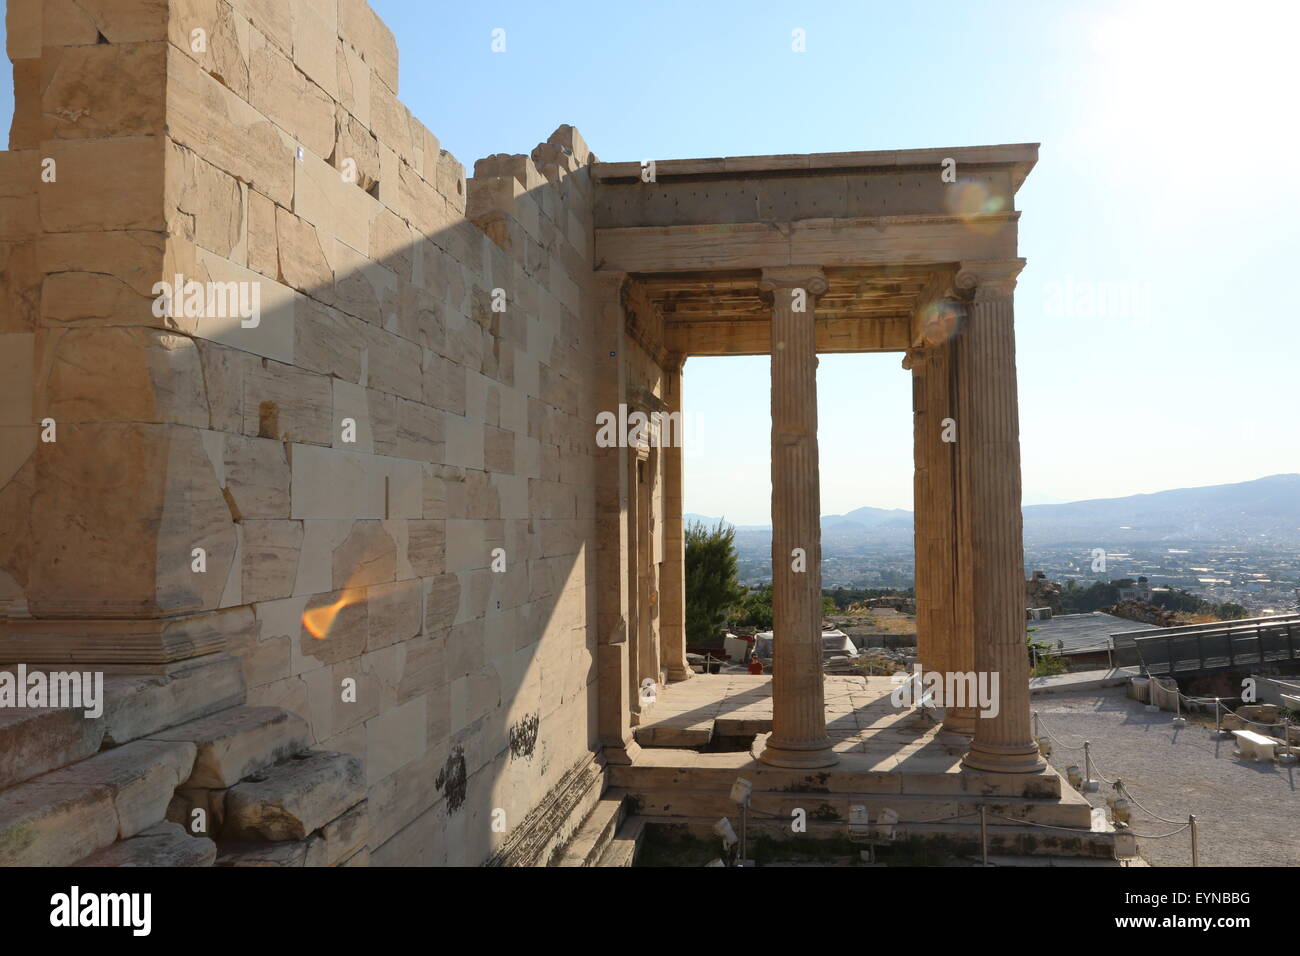 Erechtheion, Acropolis monuments in Athens Greece Stock Photo